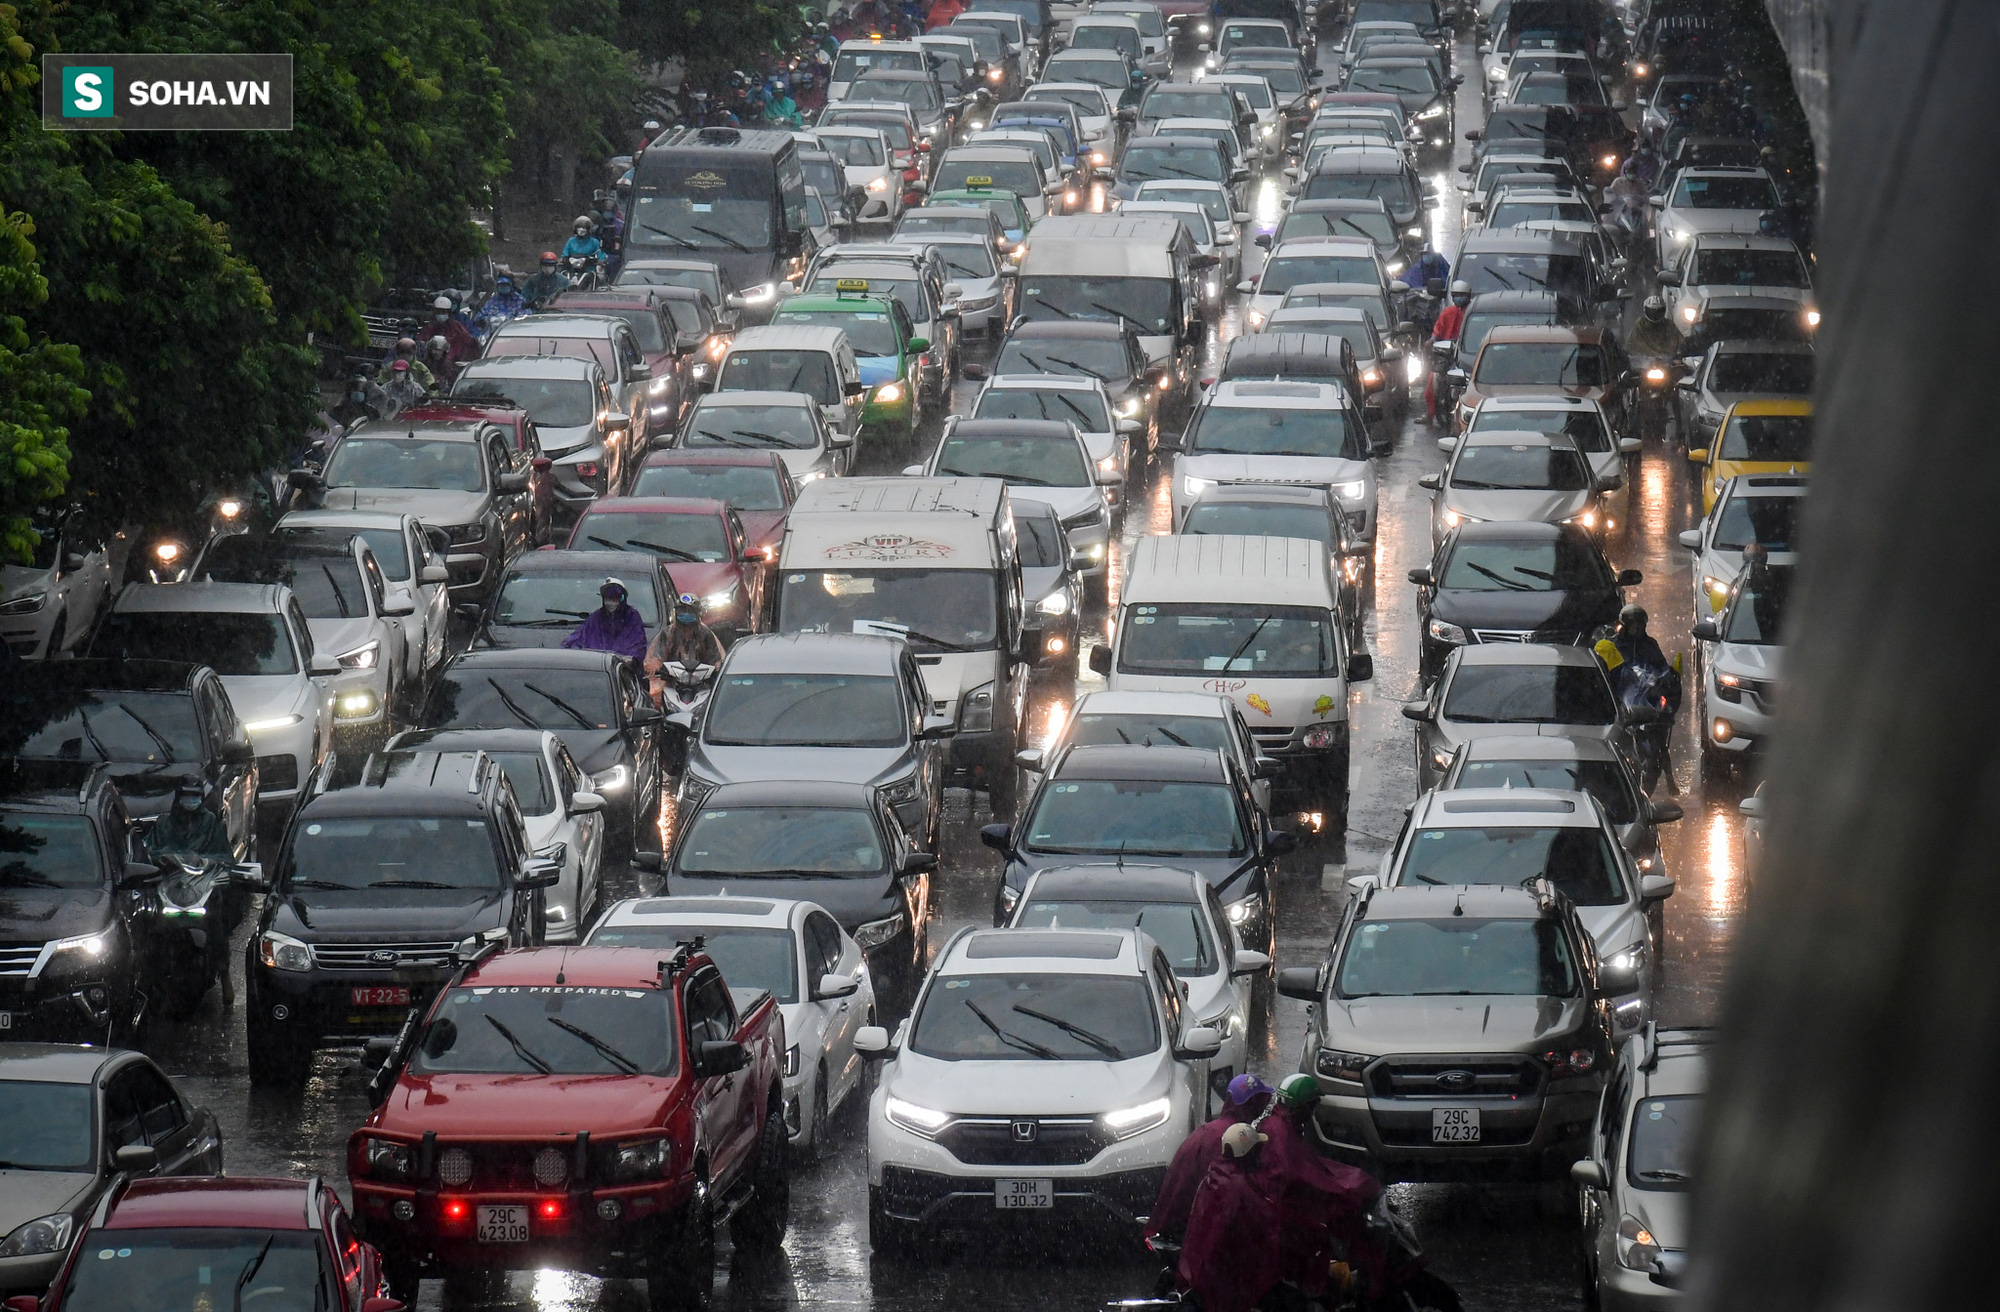 Đường phố Hà Nội tắc cứng trong mưa sáng đầu tuần, ô tô dàn hàng 6 chiếm hết lòng đường - Ảnh 1.